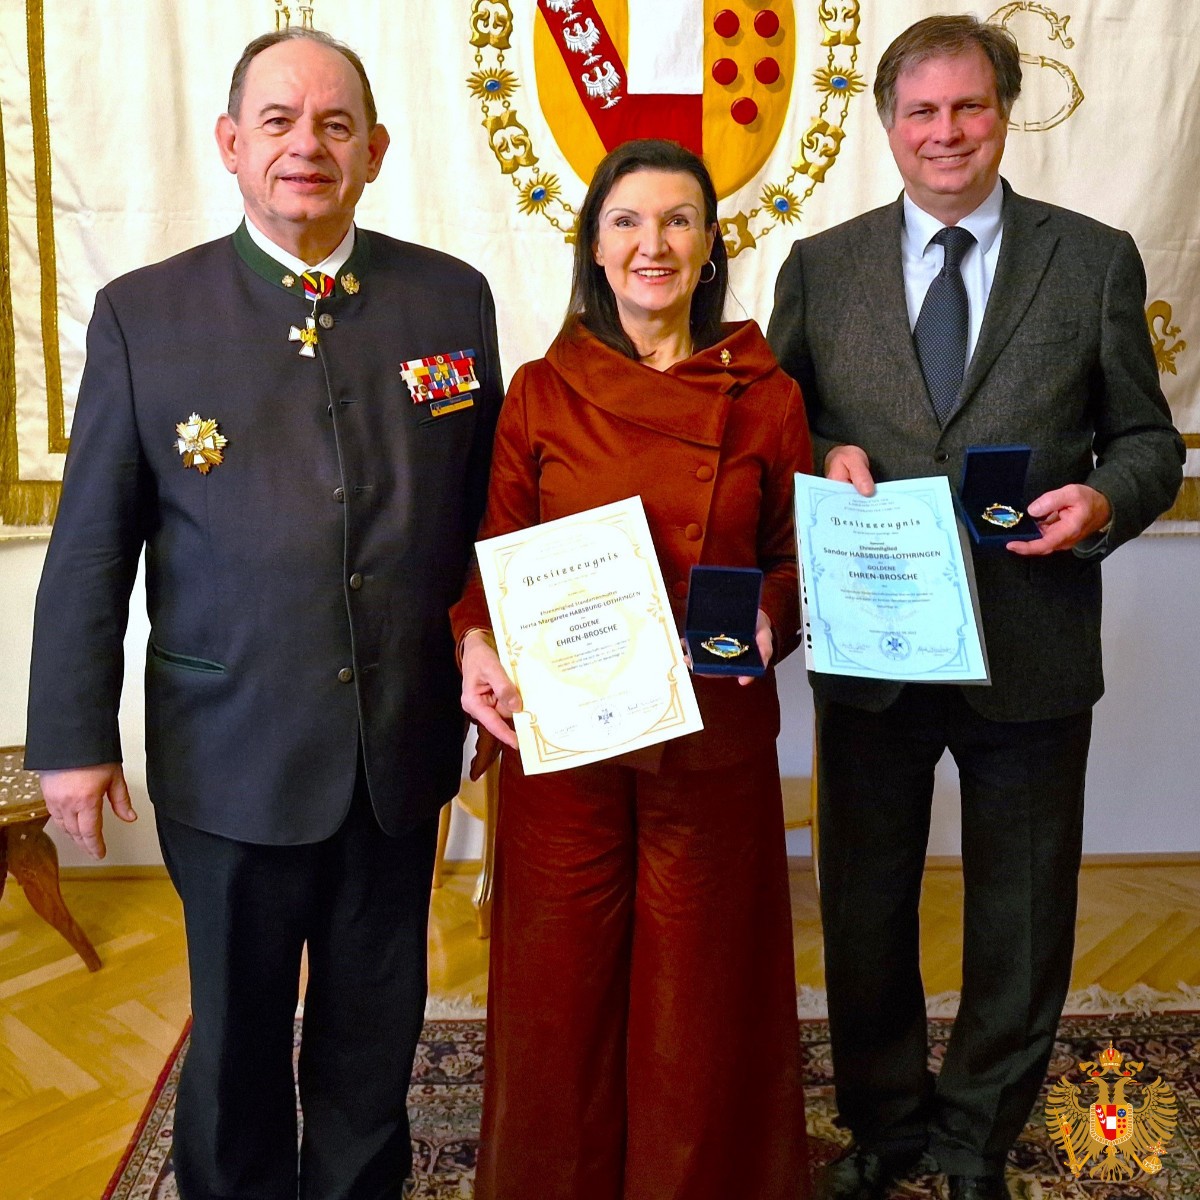 Verleihung der Goldenen Ehrenbrosche des Hollabrunner Kameradschaftsbundes durch Obmann Alfred Deimbacher.